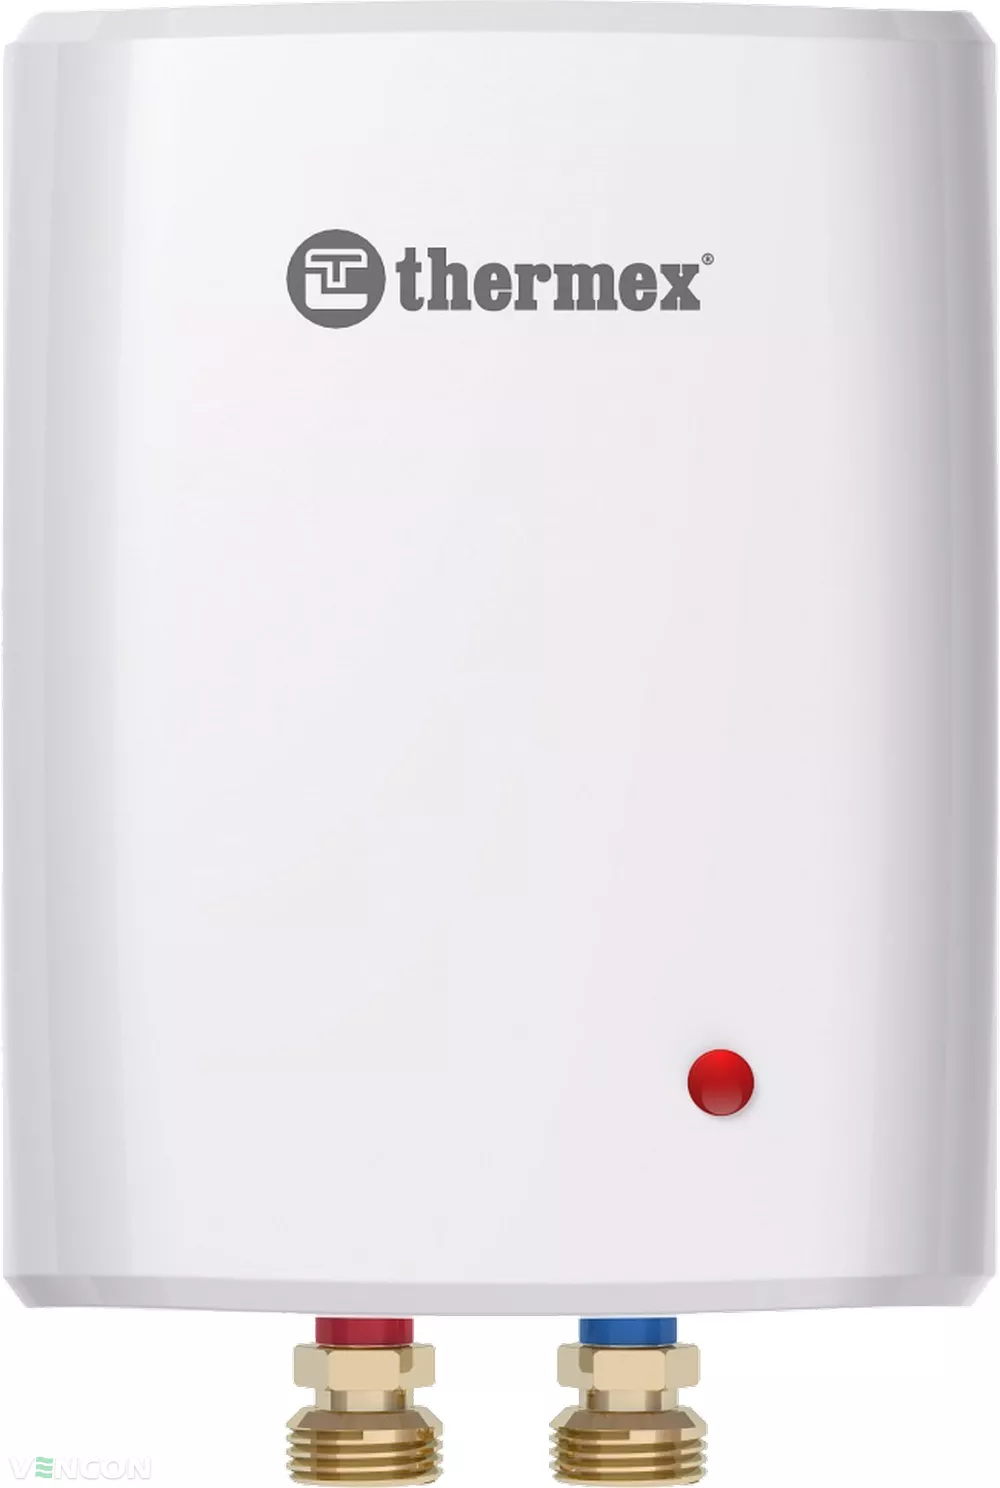 Проточный водонагреватель Thermex Surf 5000 цена 3122.00 грн - фотография 2